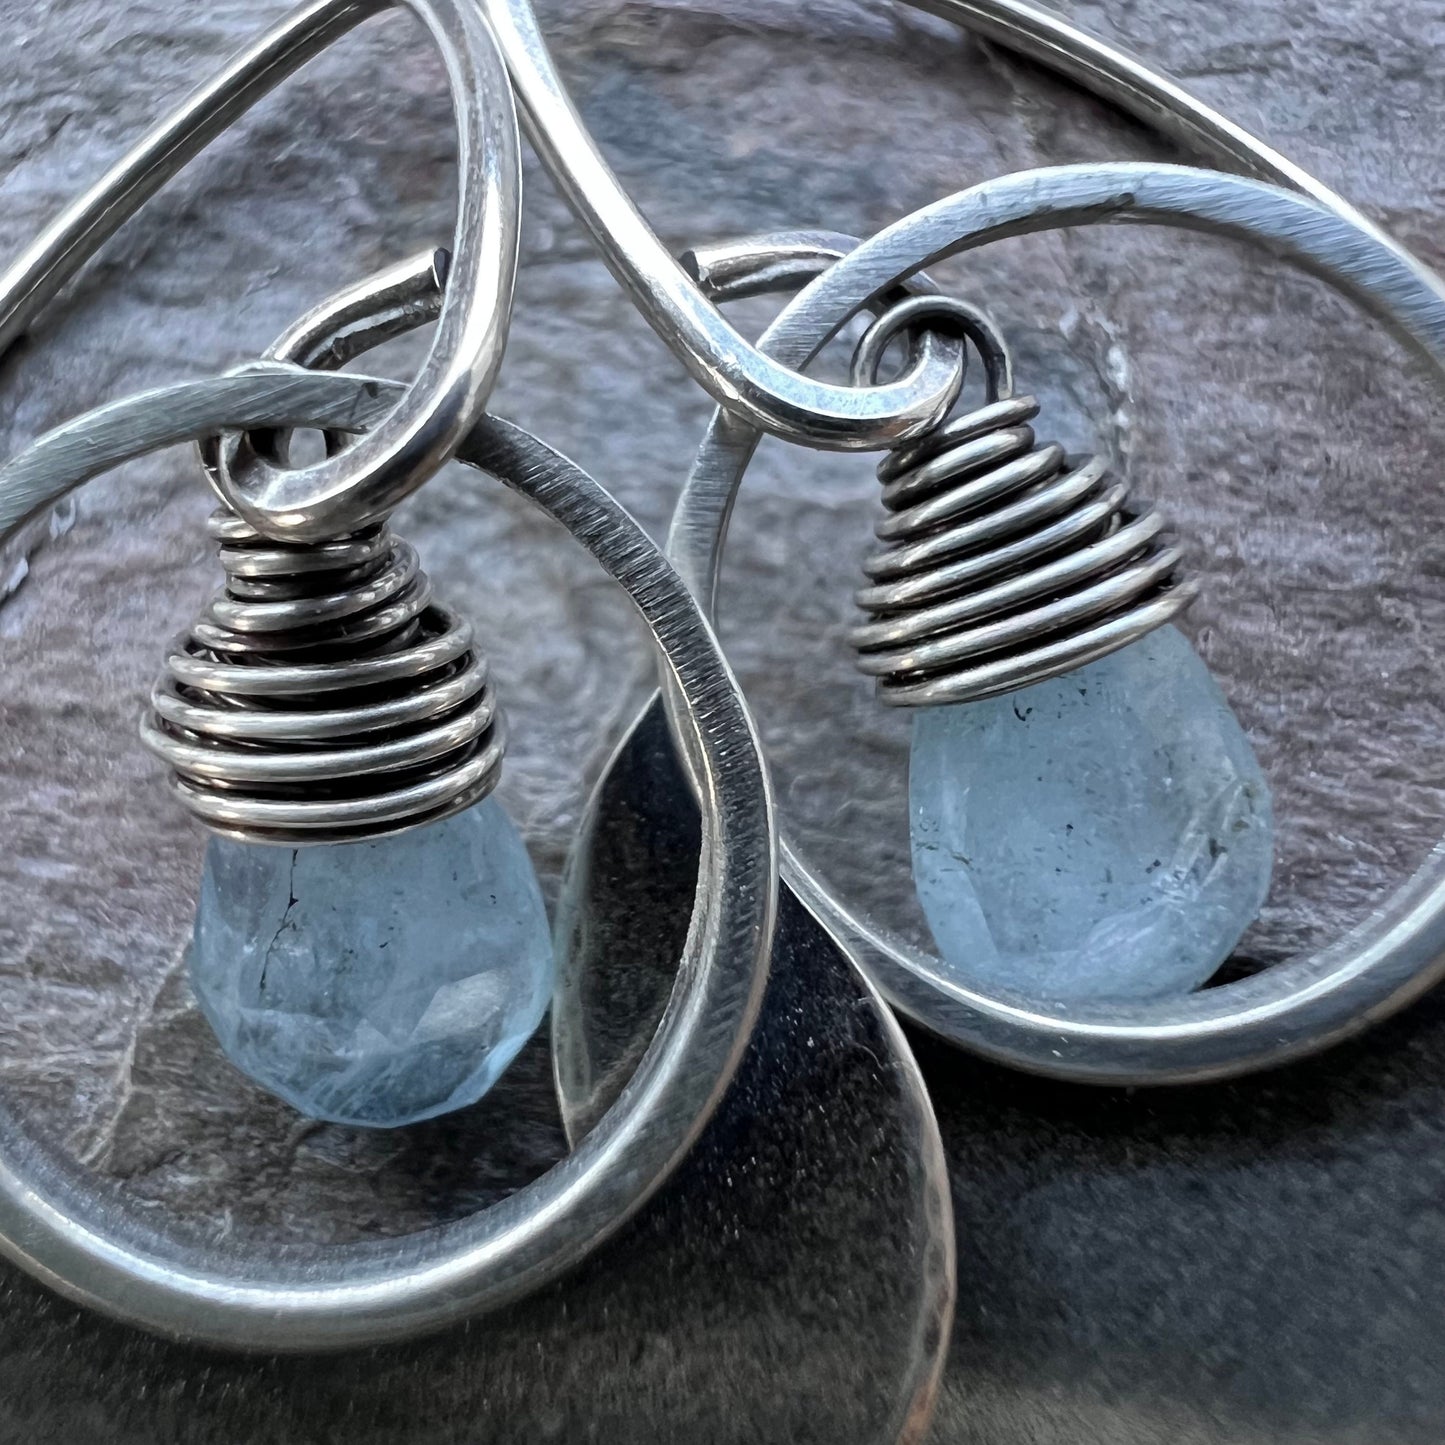 Aquamarine Sterling Silver Earrings - Genuine Aquamarine and Sterling Silver Petal Earrings